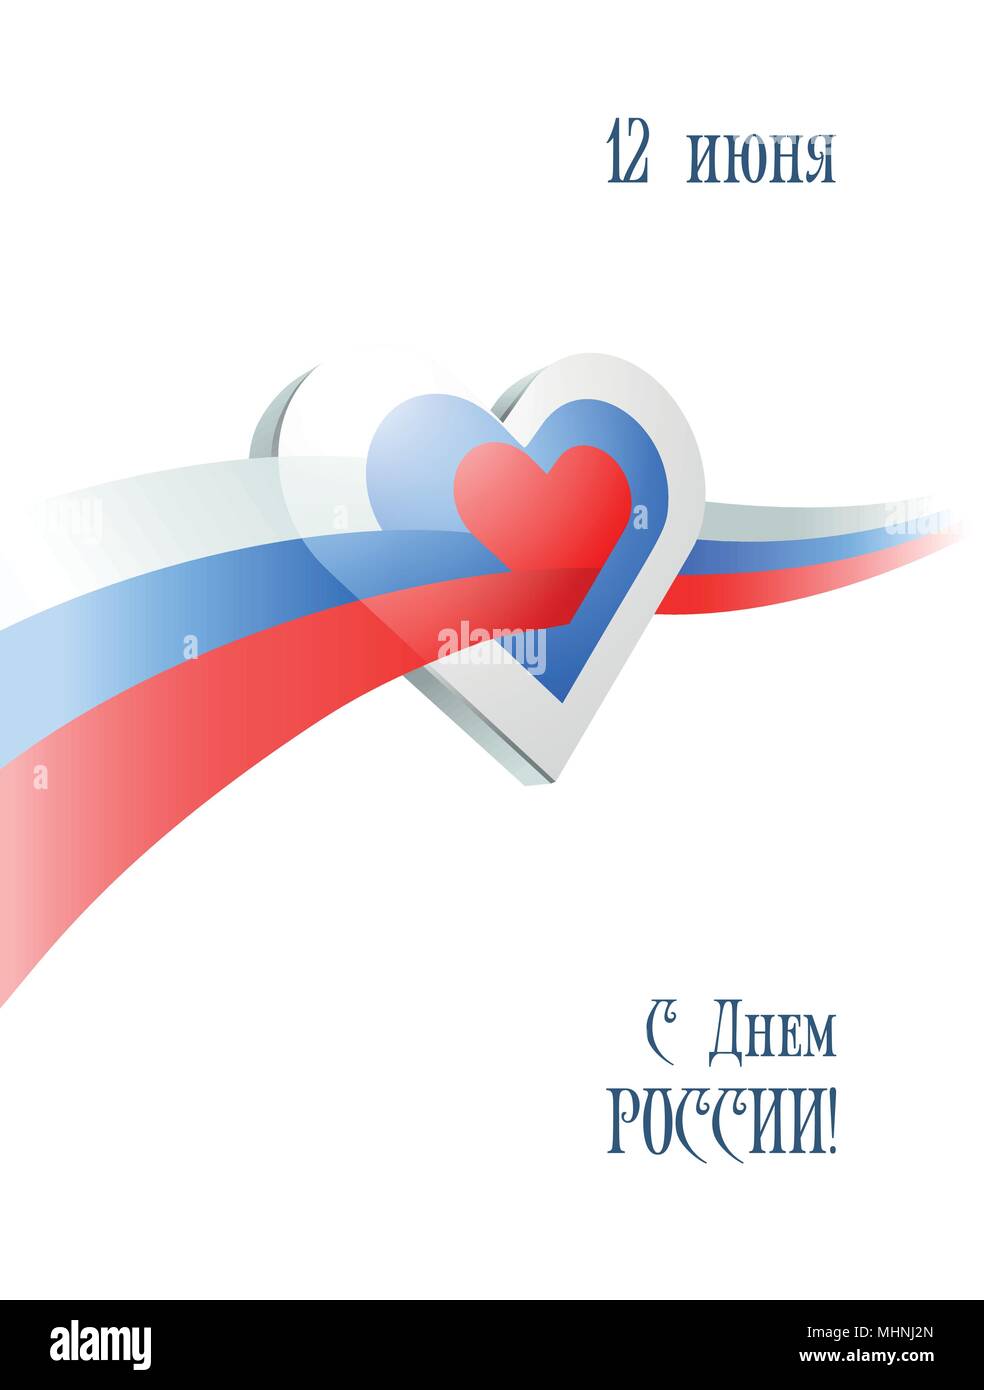 Am 12. Juni. Happy Russland Tag. Grußkarte mit wehenden russischen Flagge kreuze Herz auf weißem Hintergrund. Vector Illustration. Stock Vektor